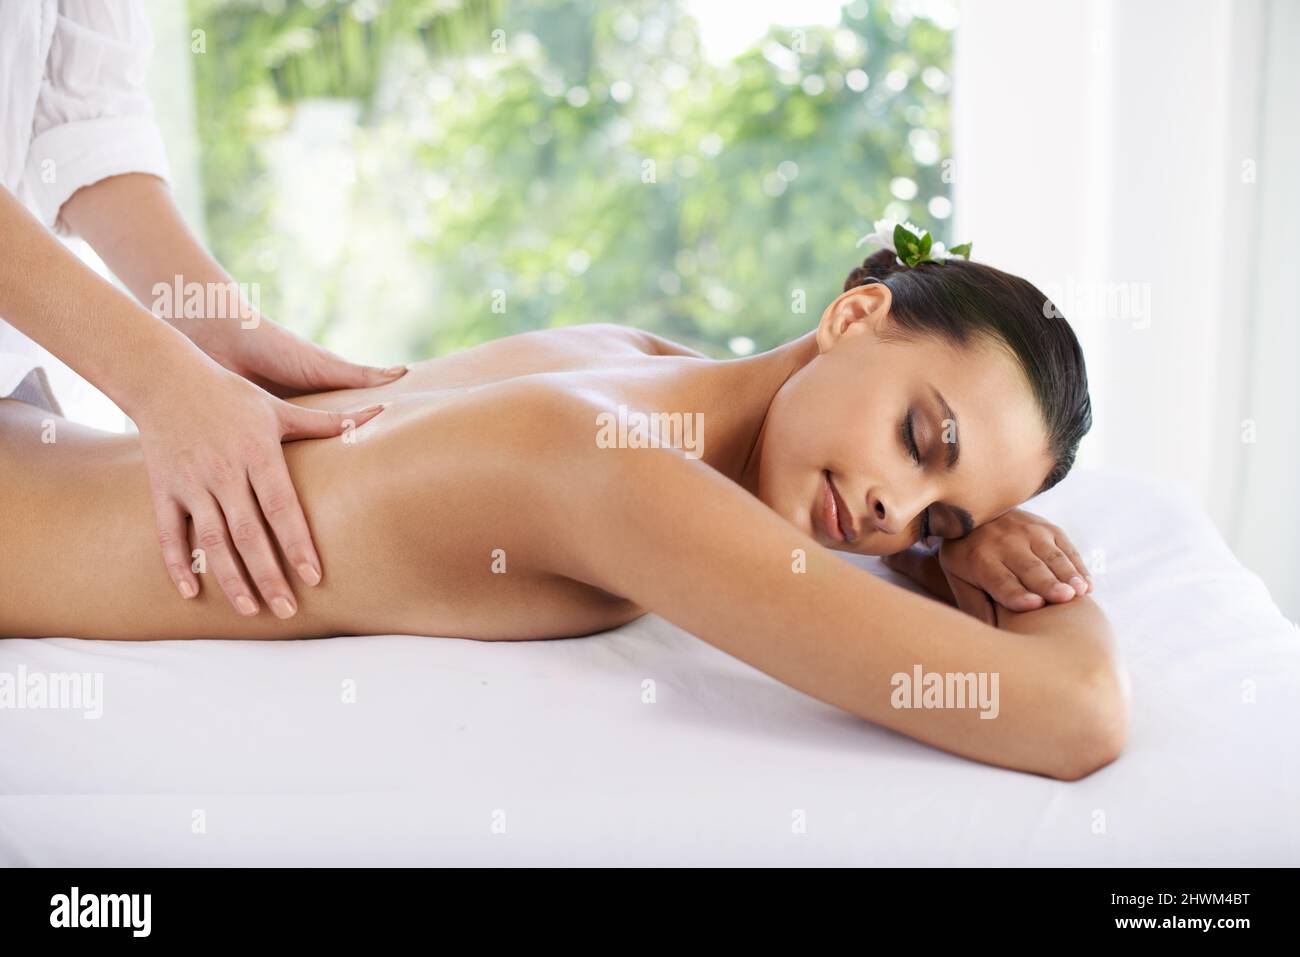 La vie ne s'améliore pas. Photo d'une jeune femme bénéficiant d'un massage au spa. Banque D'Images